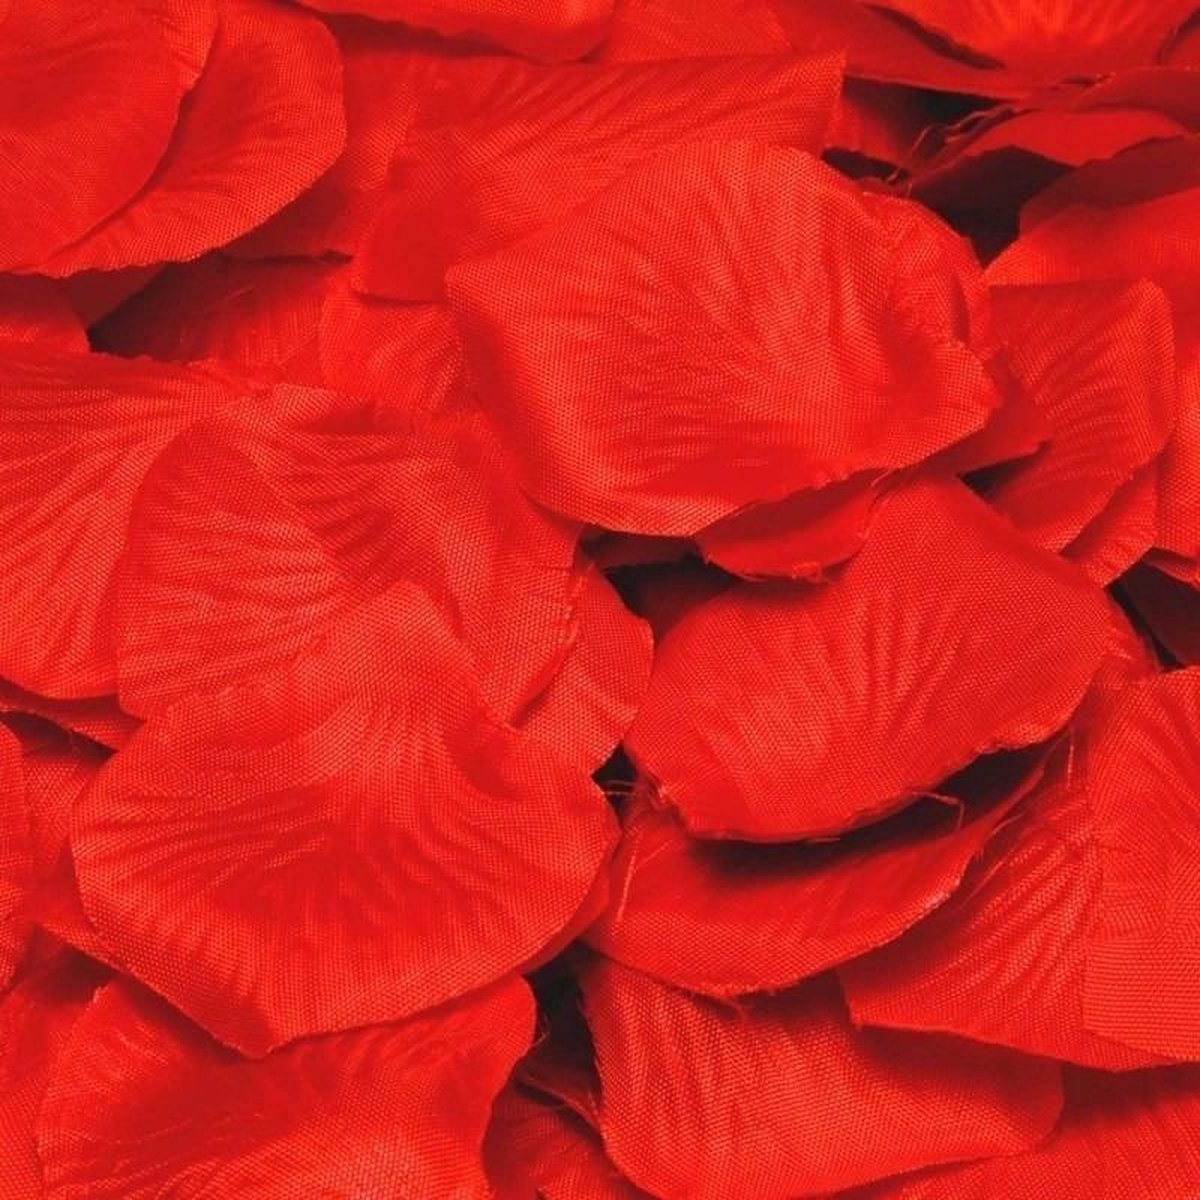 Luxe rode rozenblaadjes 432 stuks - Merkloos